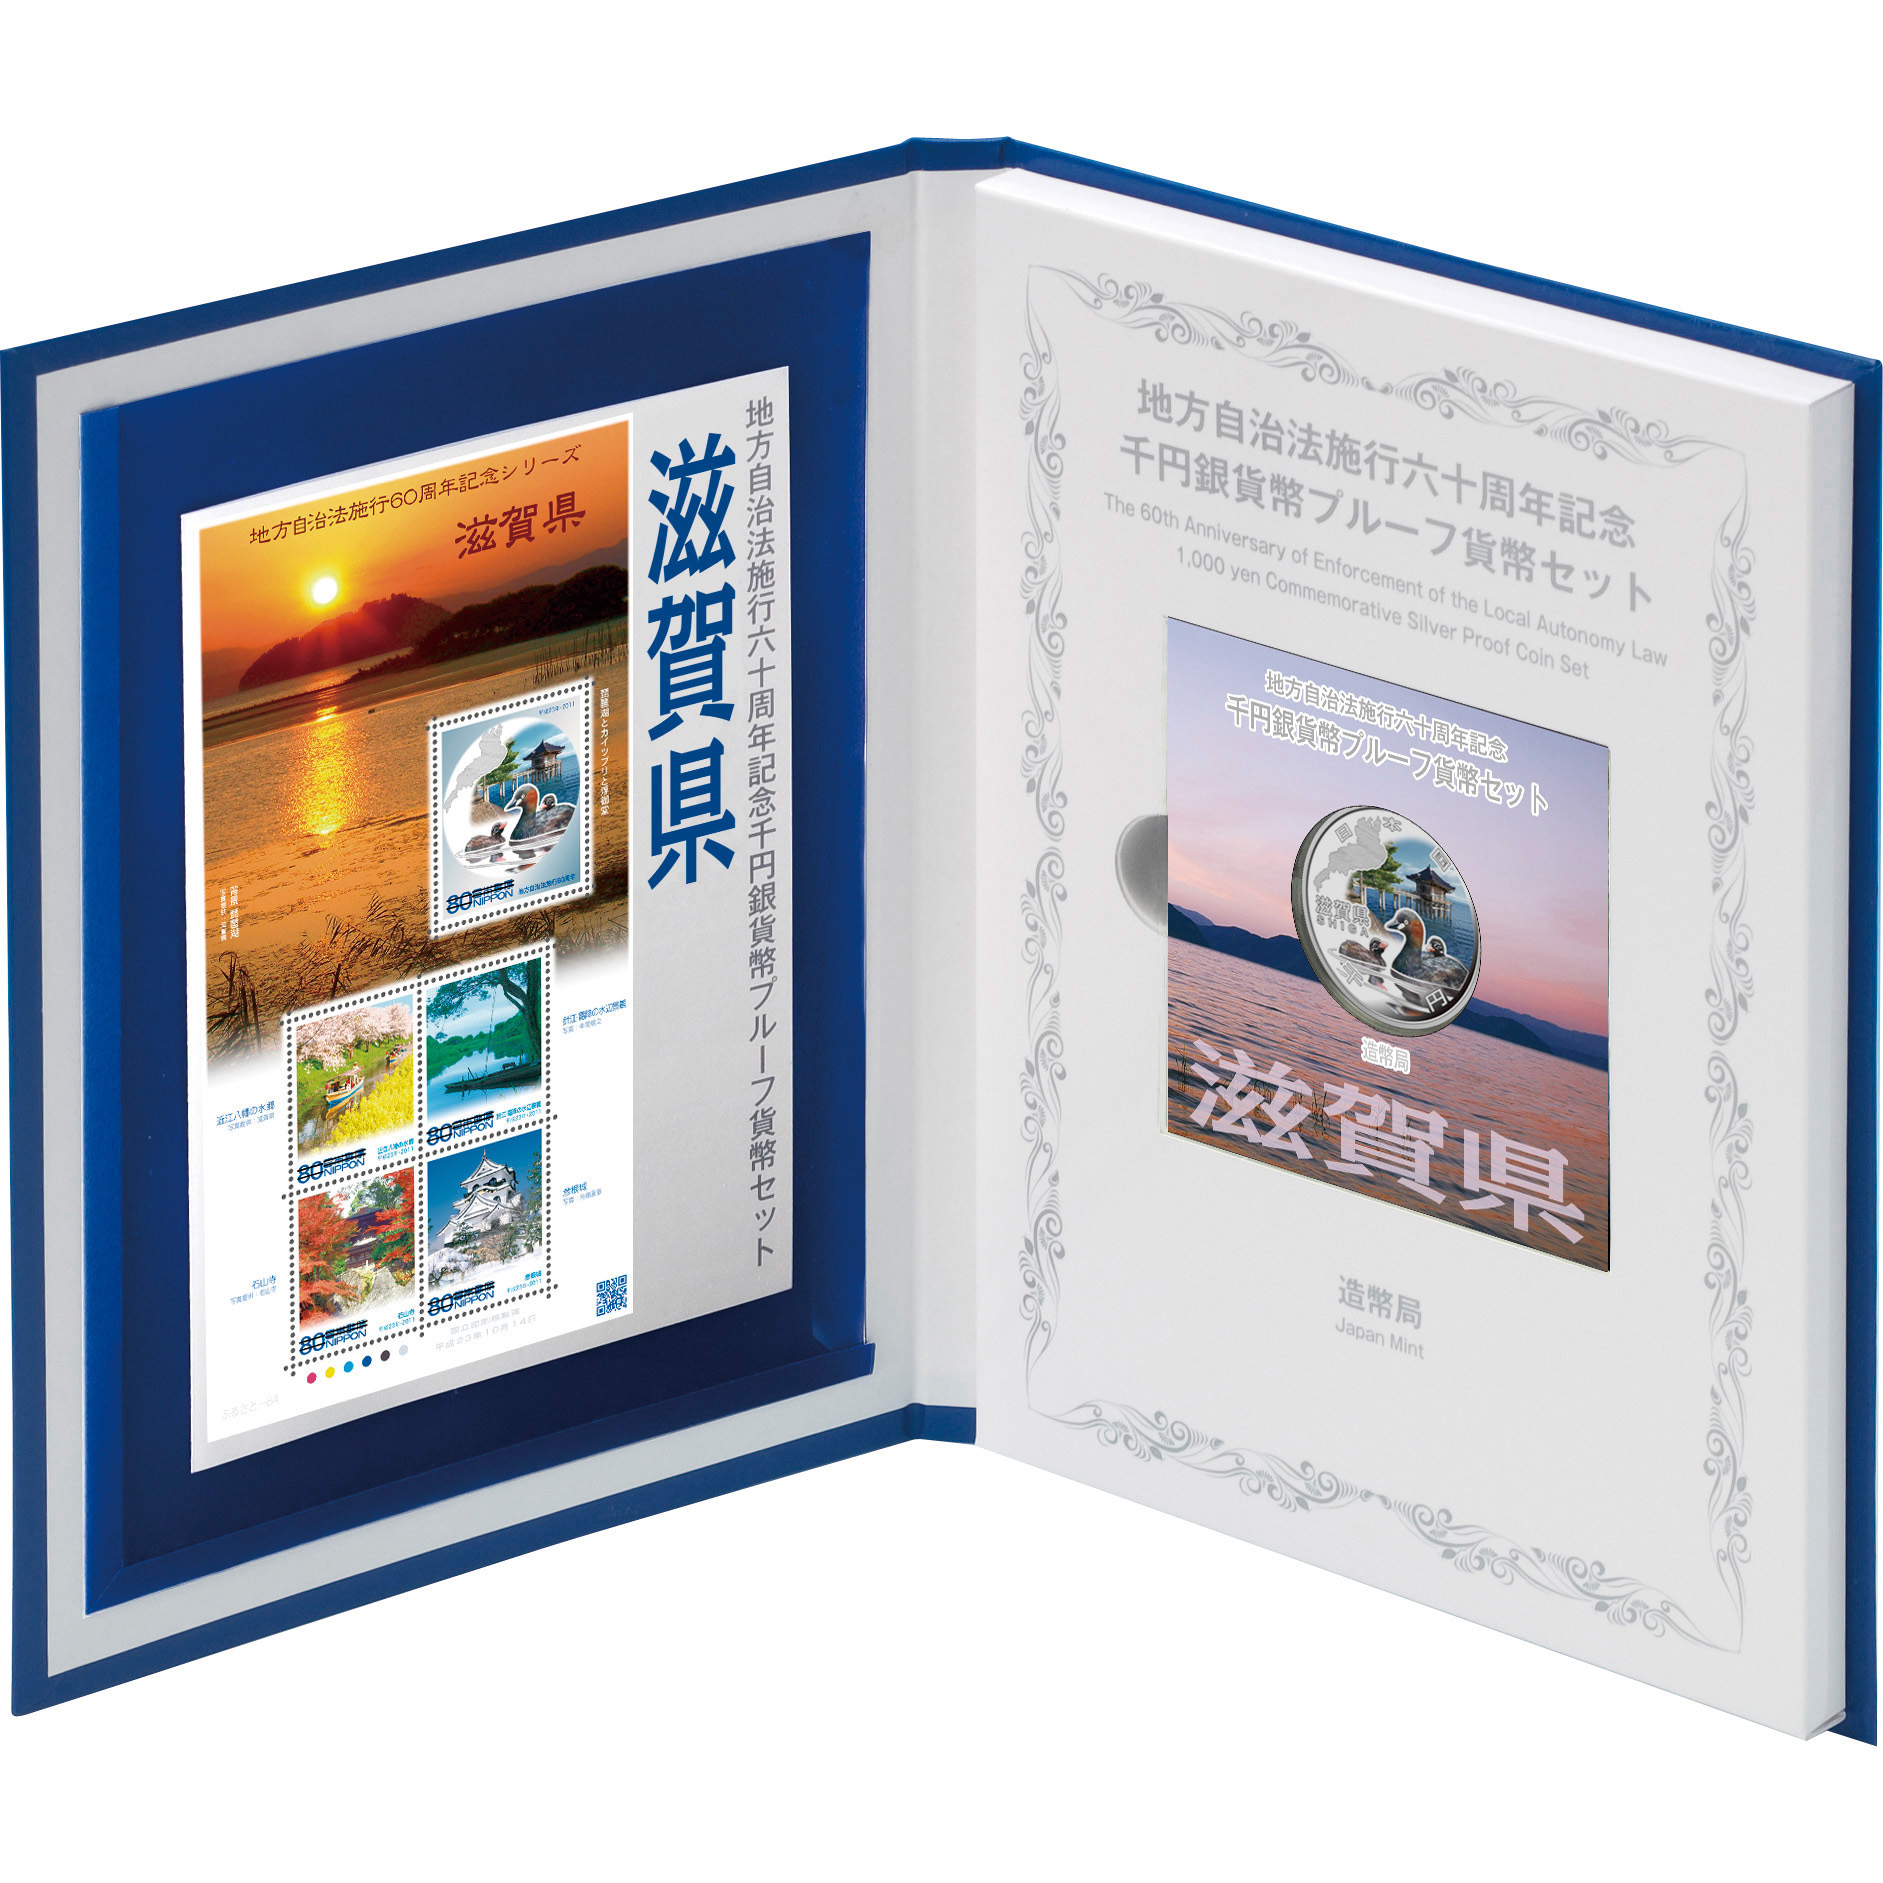 日本 2011年 地方自治法施行60周年記念貨幣 第17回 「滋賀県」 単体 ...